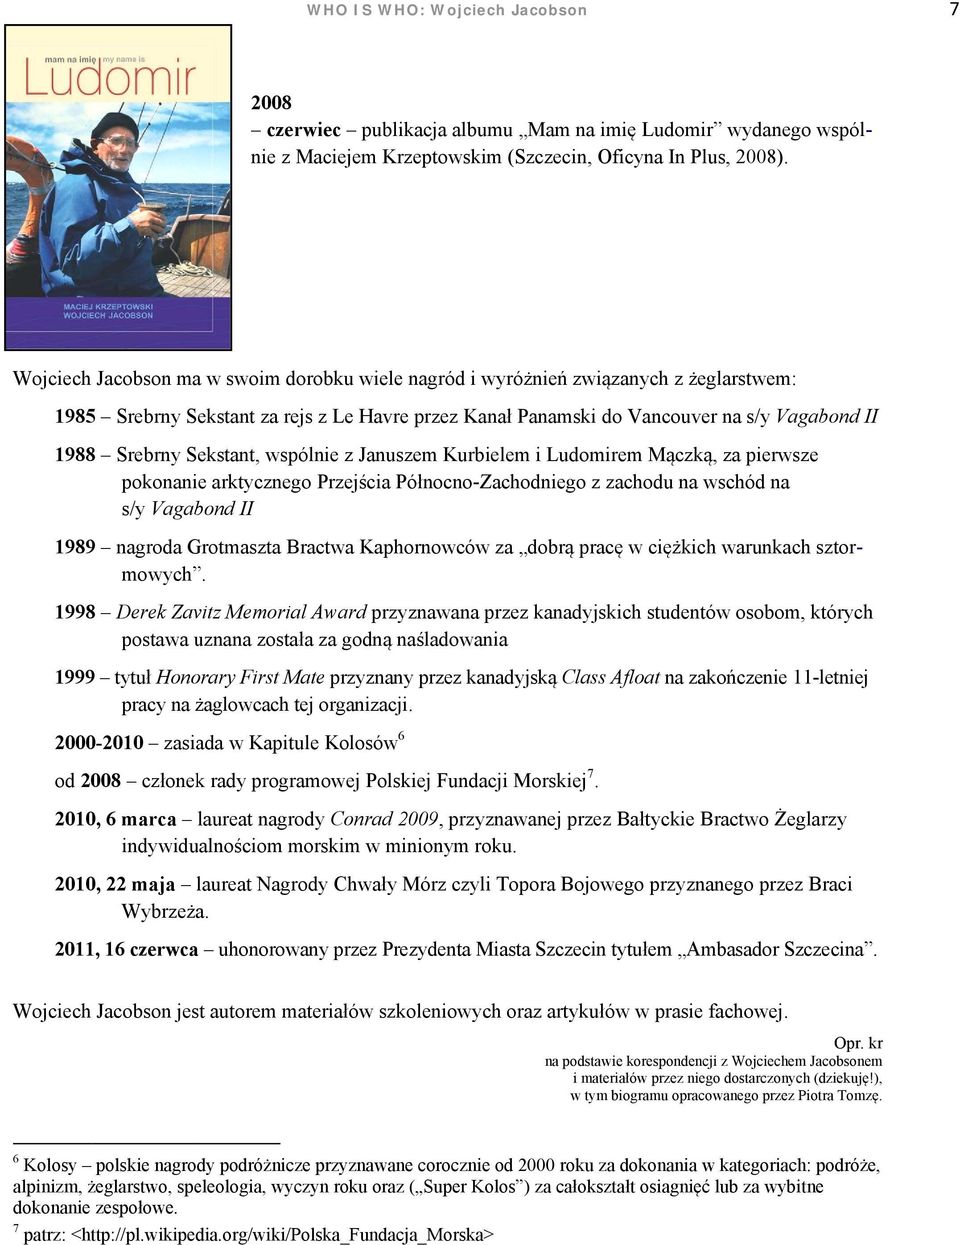 Sekstant, wspólnie z Januszem Kurbielem i Ludomirem Mączką, za pierwsze pokonanie arktycznego Przejścia Północno-Zachodniego z zachodu na wschód na s/y Vagabond II 19899 nagroda Grotmaszta Bractwa